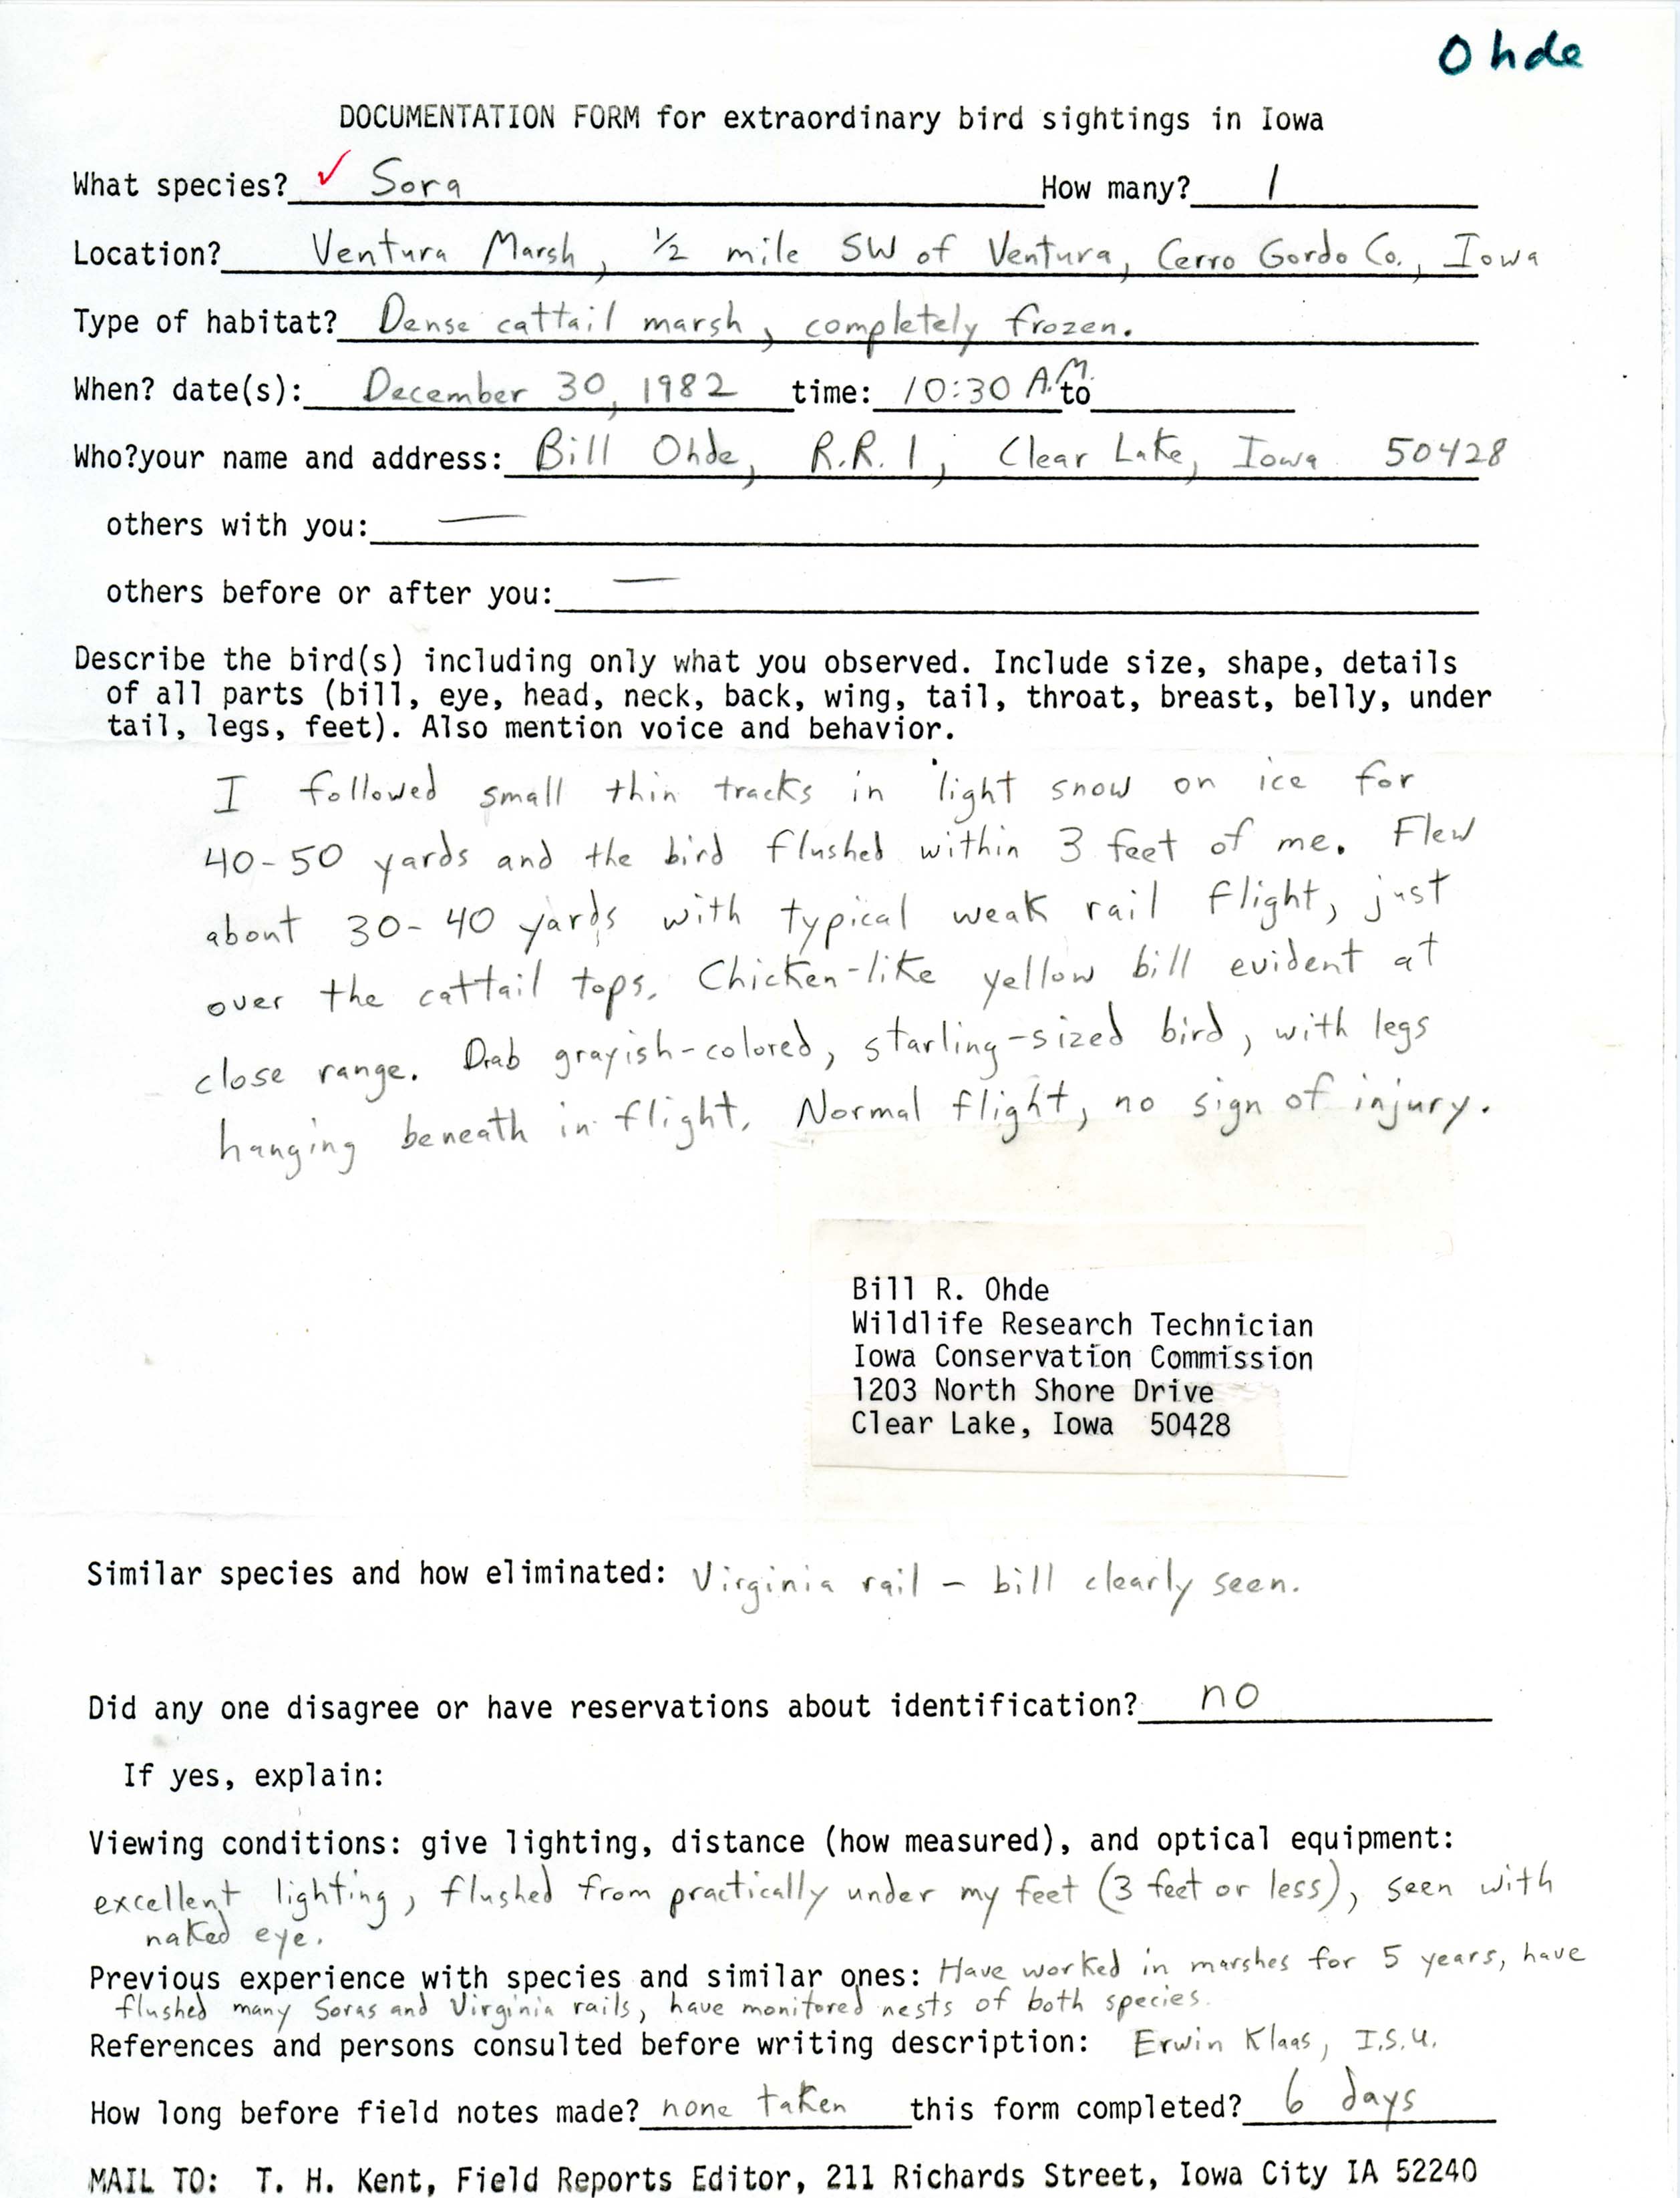 Rare bird documentation form for Sora at Ventura Marsh, 1982